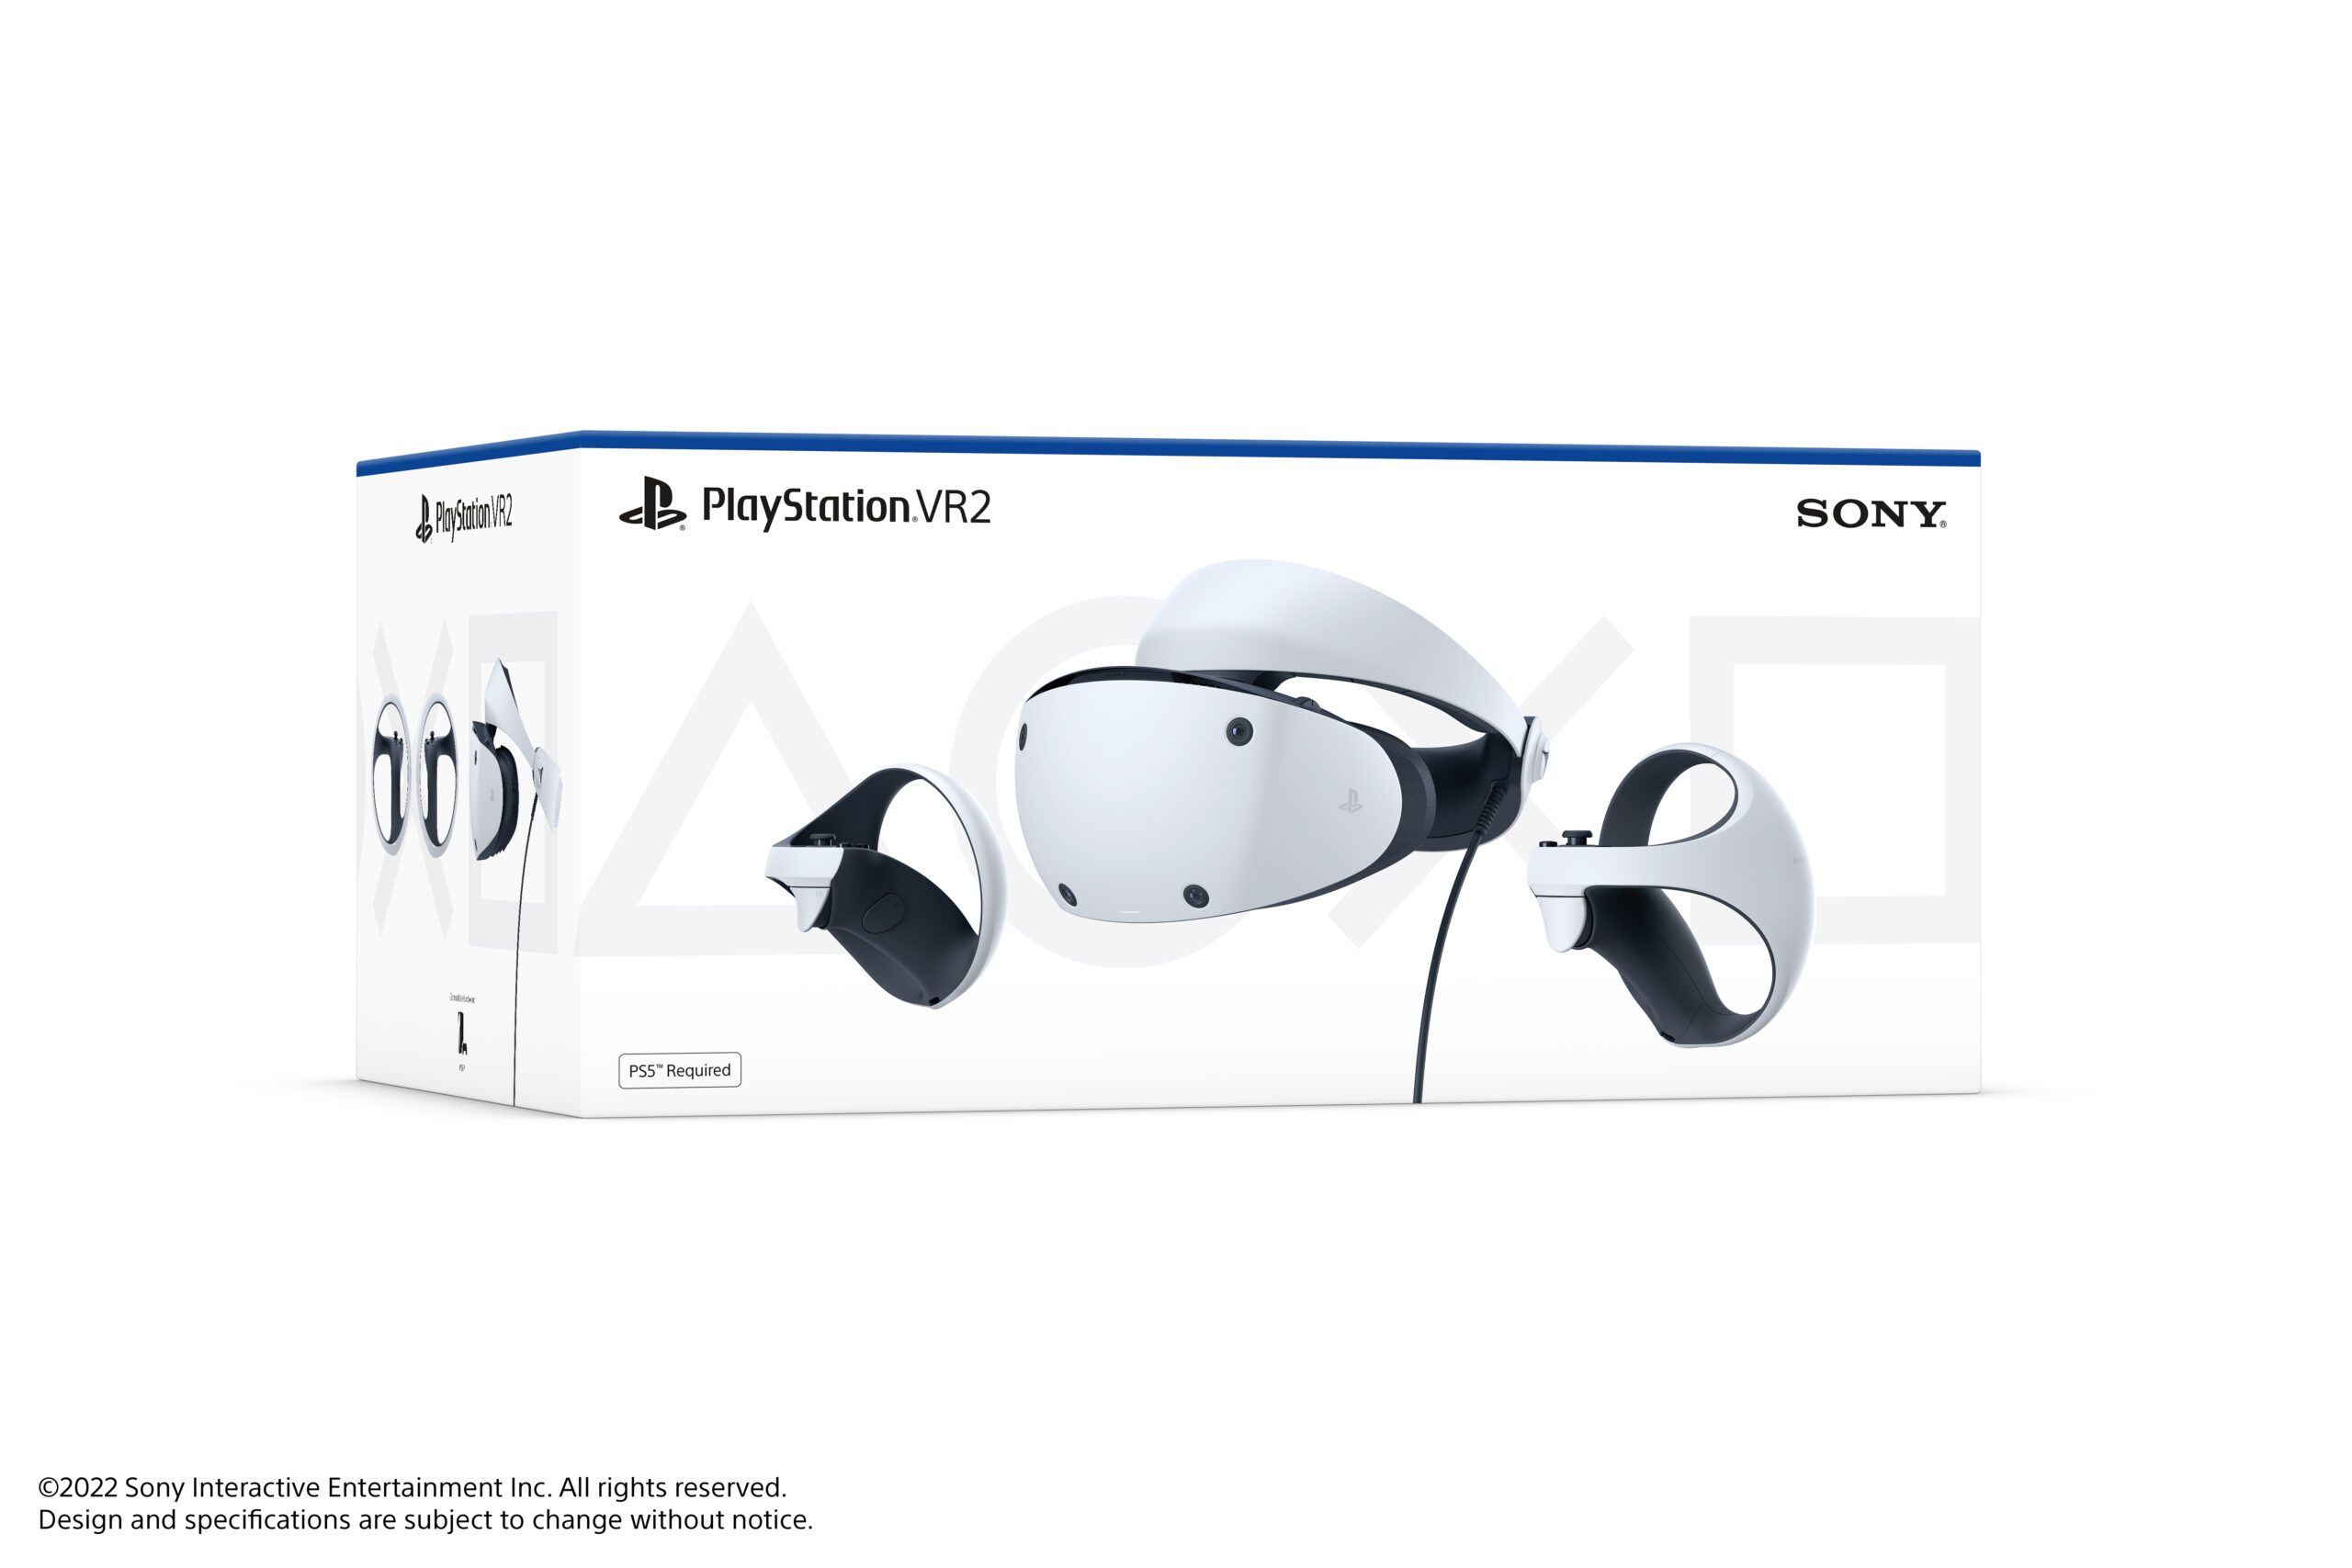 Ensemble Casque PSVR / Playstation VR Avec Caméra Pour PS4